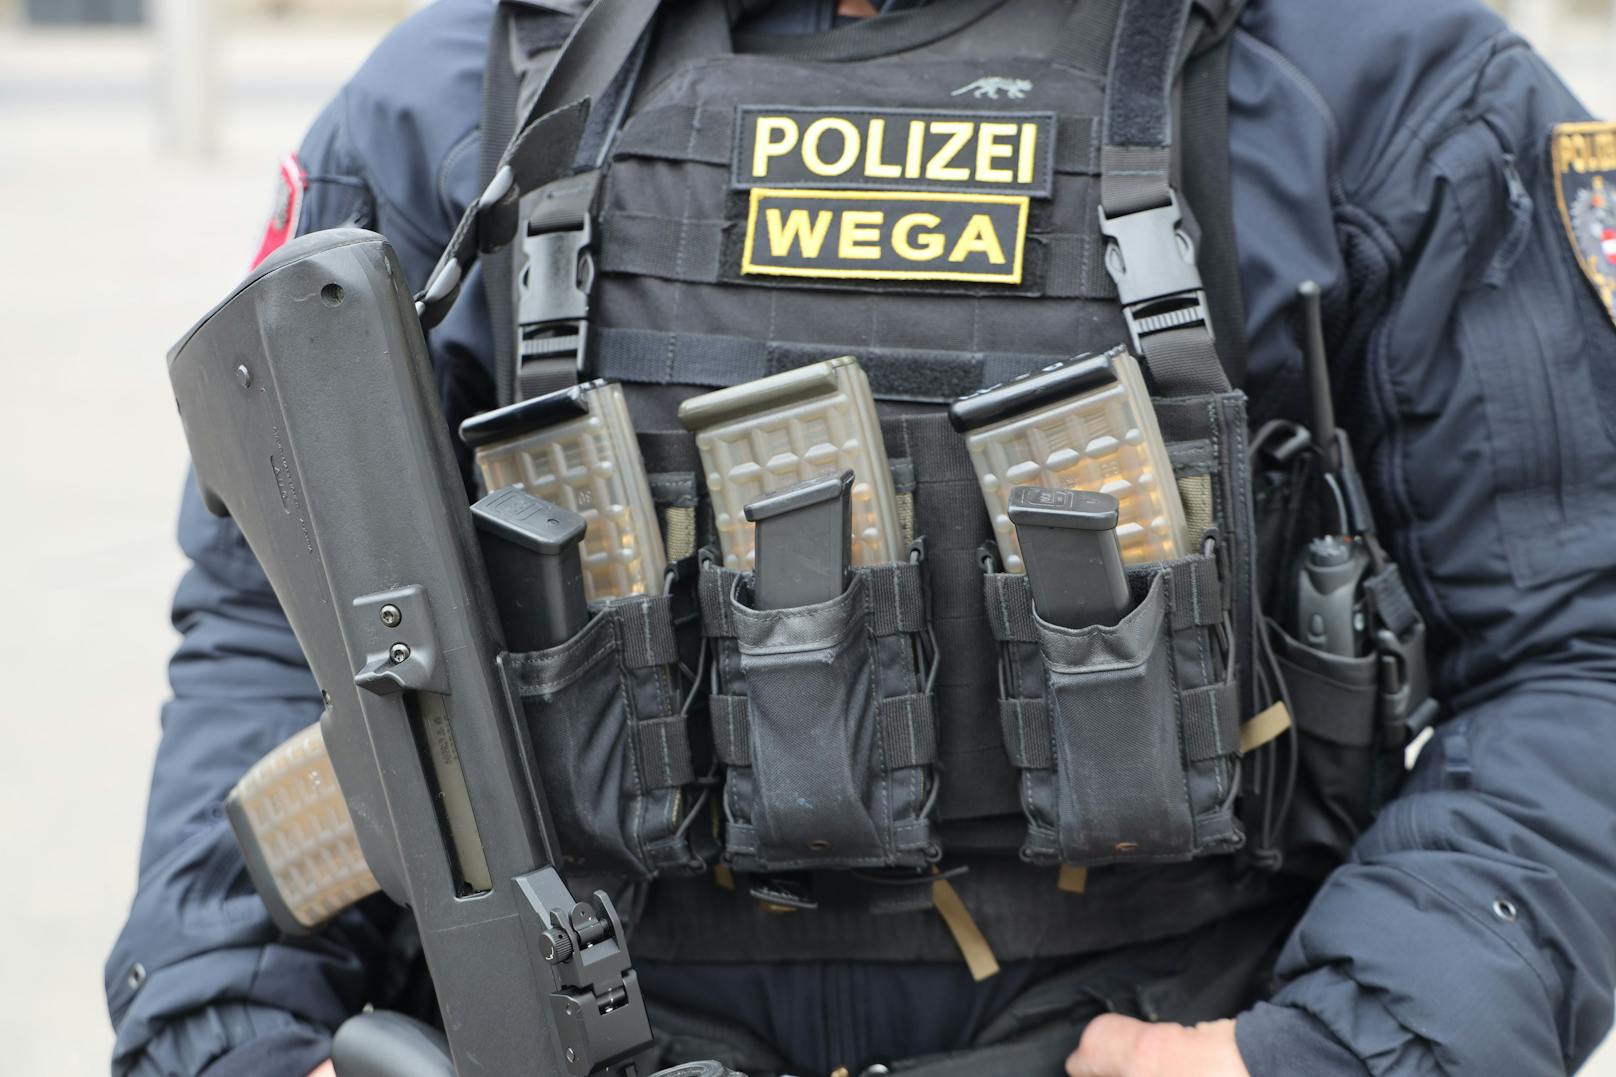 WEGA-Einsatz in Wien – EU-weit gesuchter Mann verhaftet